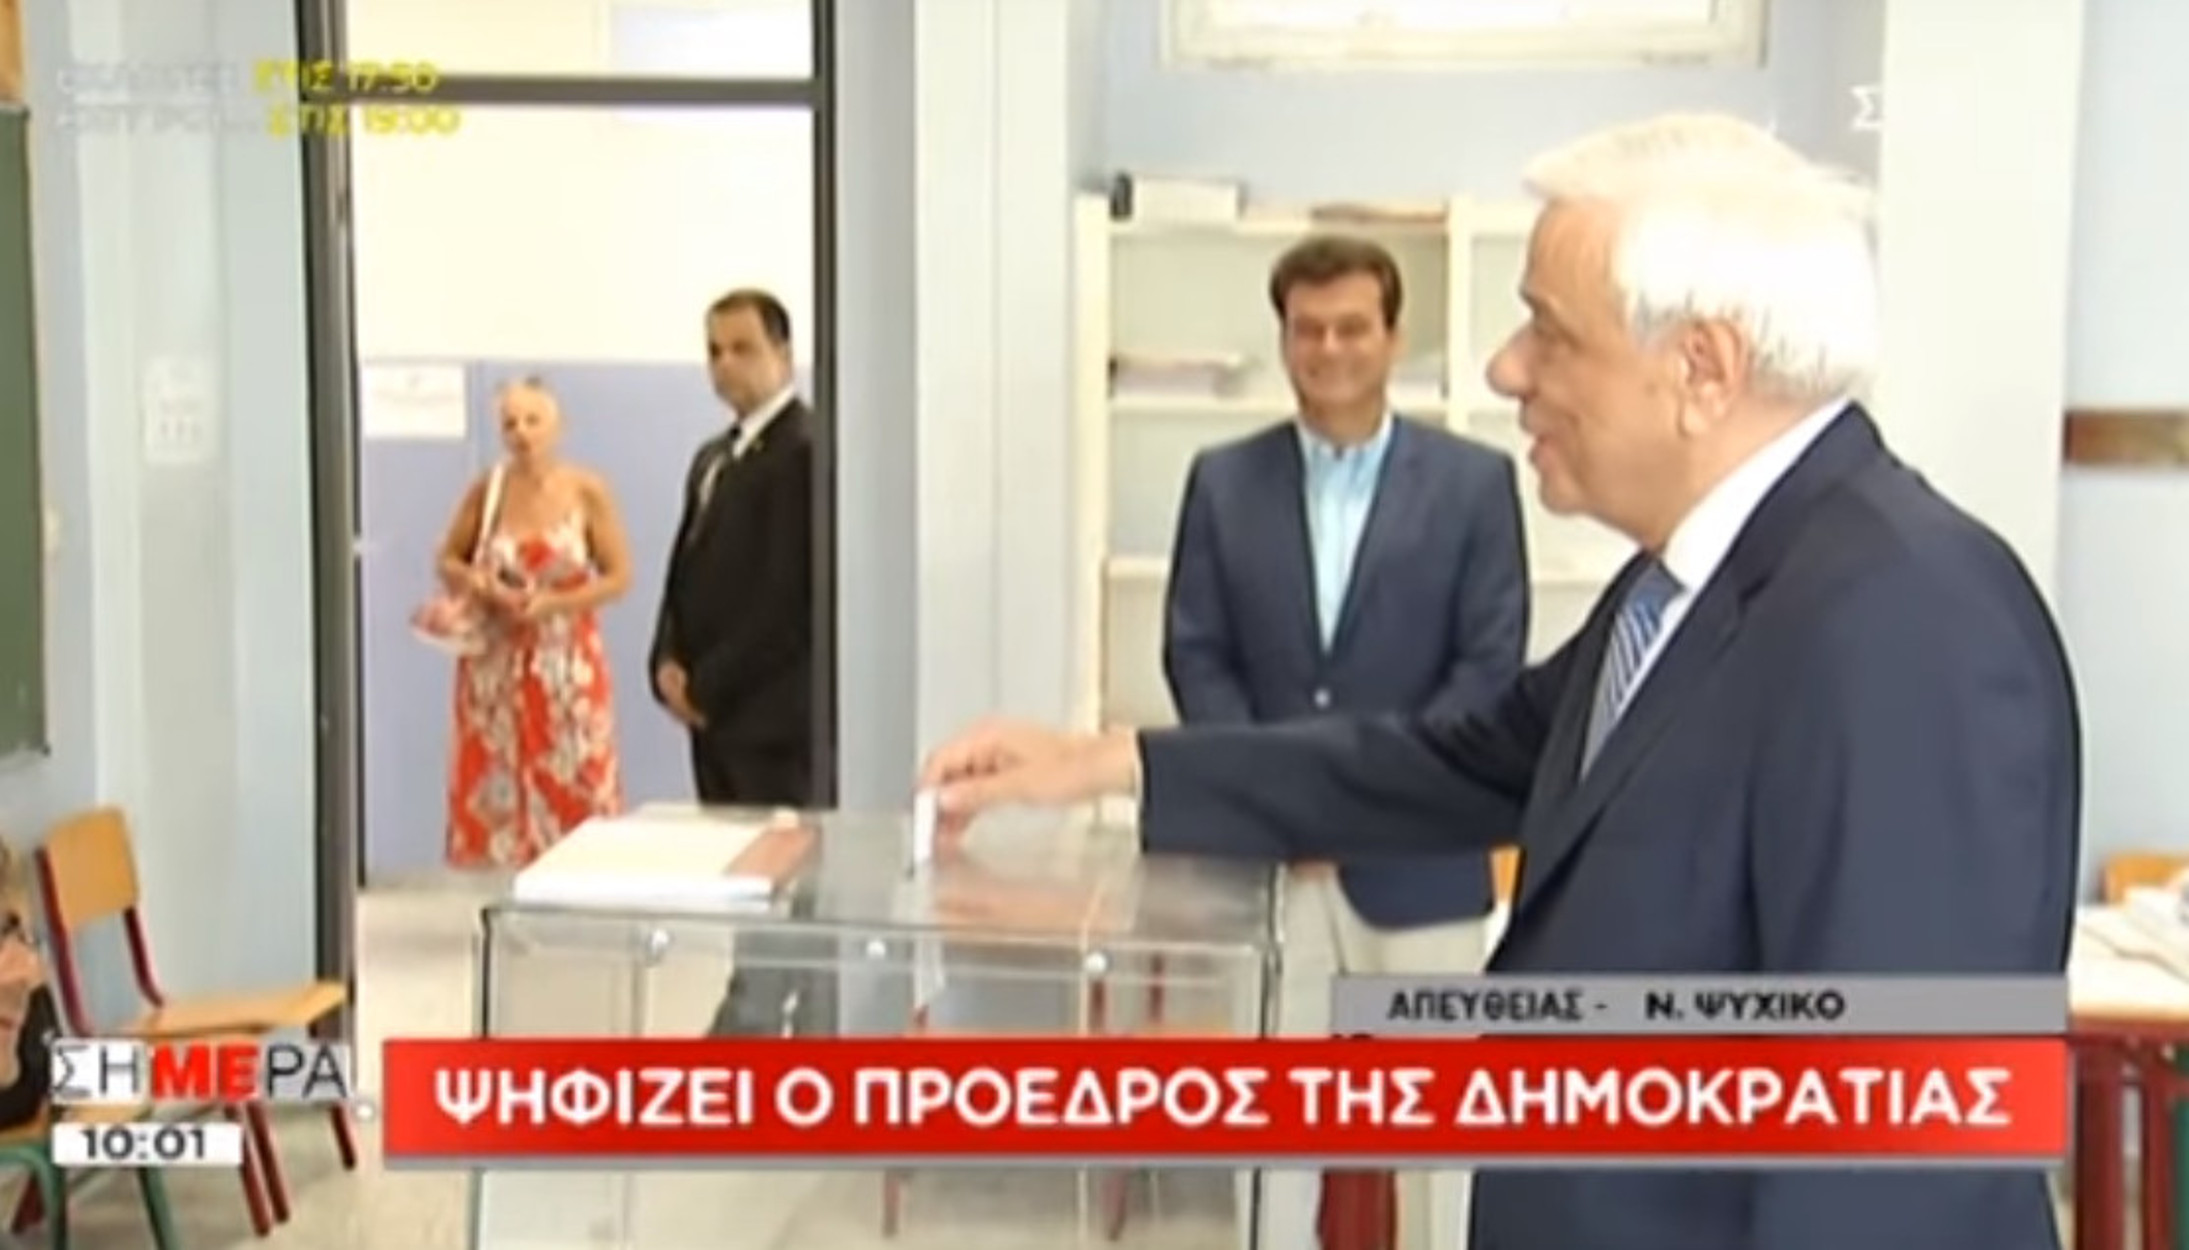 Εκλογές 2019: Στο Ψυχικό ψήφισε ο Προκόπης Παυλόπουλος – video